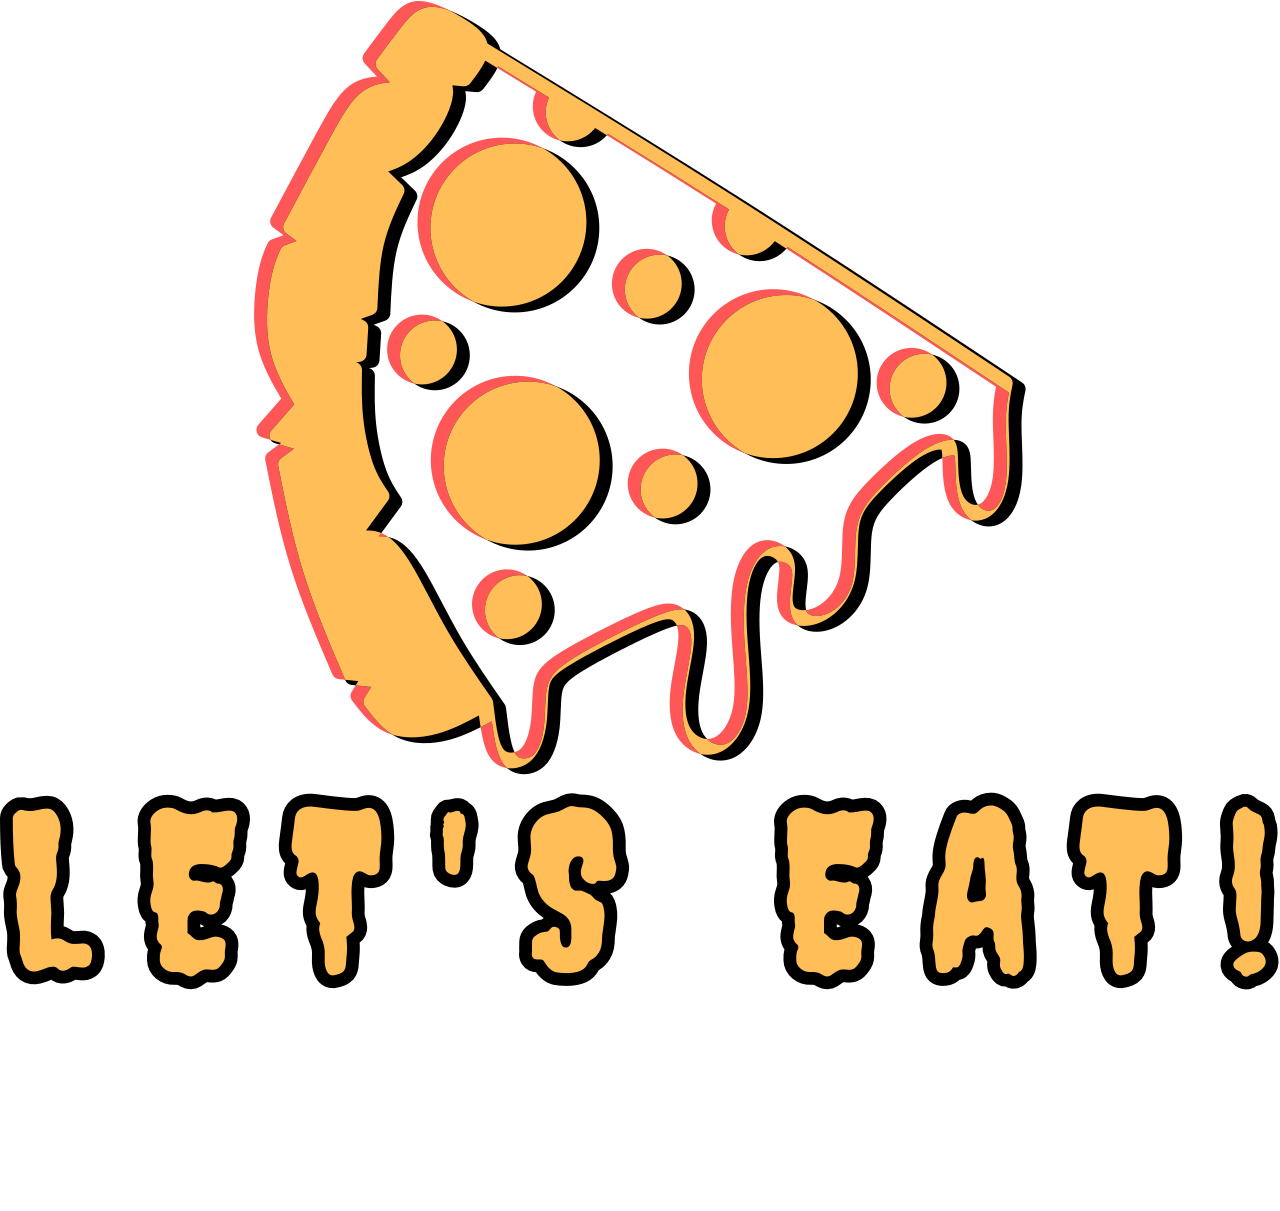 LET'S EAT!'s logo